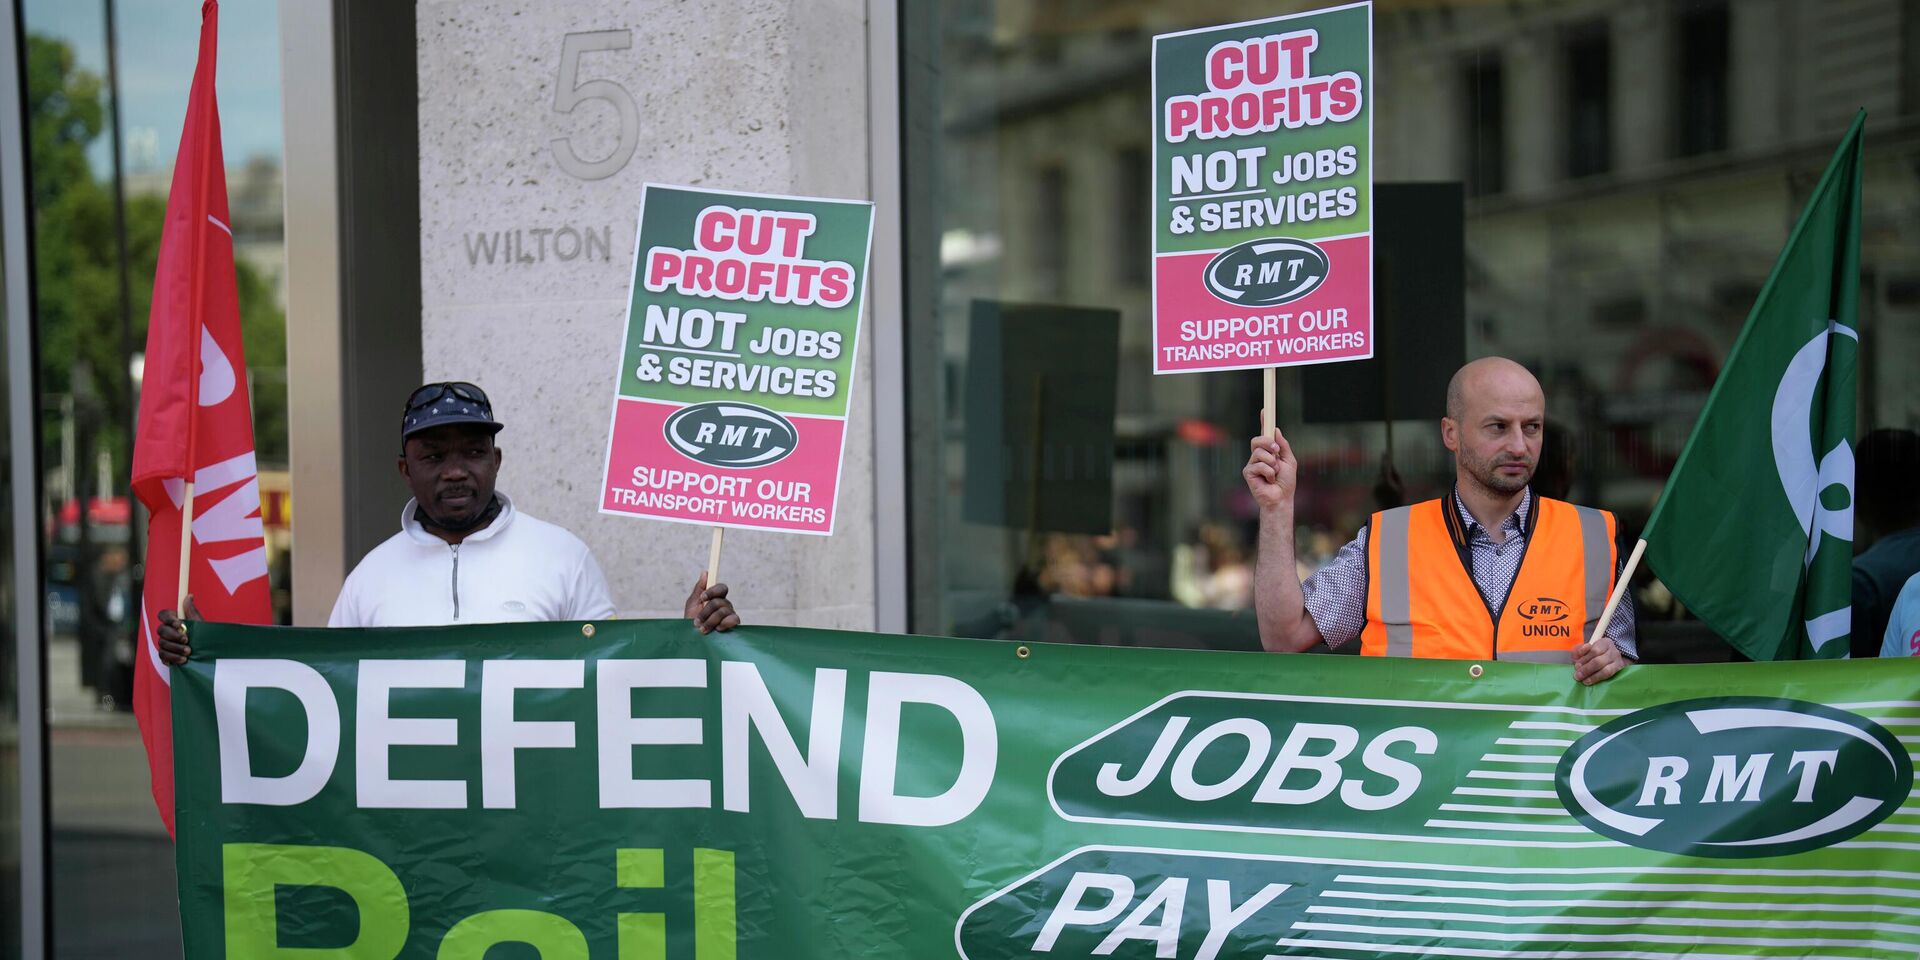 В Великобритании прошла самая массовая за 30 лет забастовка железнодорожных работников под предводительством крупнейшего в Британии Национального профсоюза морских, железнодорожных и транспортных работников (RMT). Забастовка прервала движение поездов на 3 дня: 21, 23 и 25 июня. Железнодорожники выступали за индексацию заработных плат на уровне инфляции, улучшение условий труда, а также против сокращения более чем 2500 работников и увольнений ради перевода в аутсорс